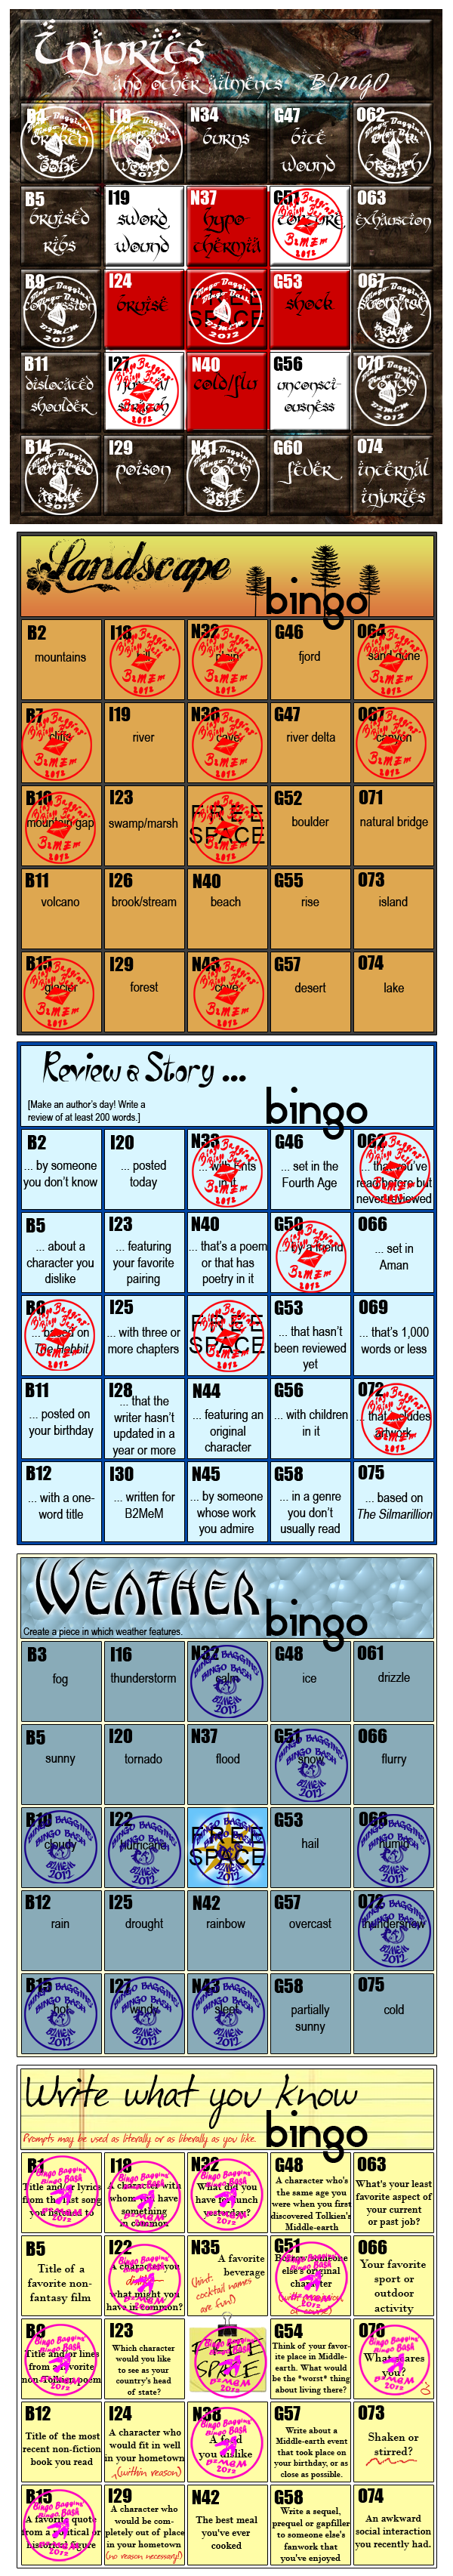 Jay of Lasgalen's Bingo Cards